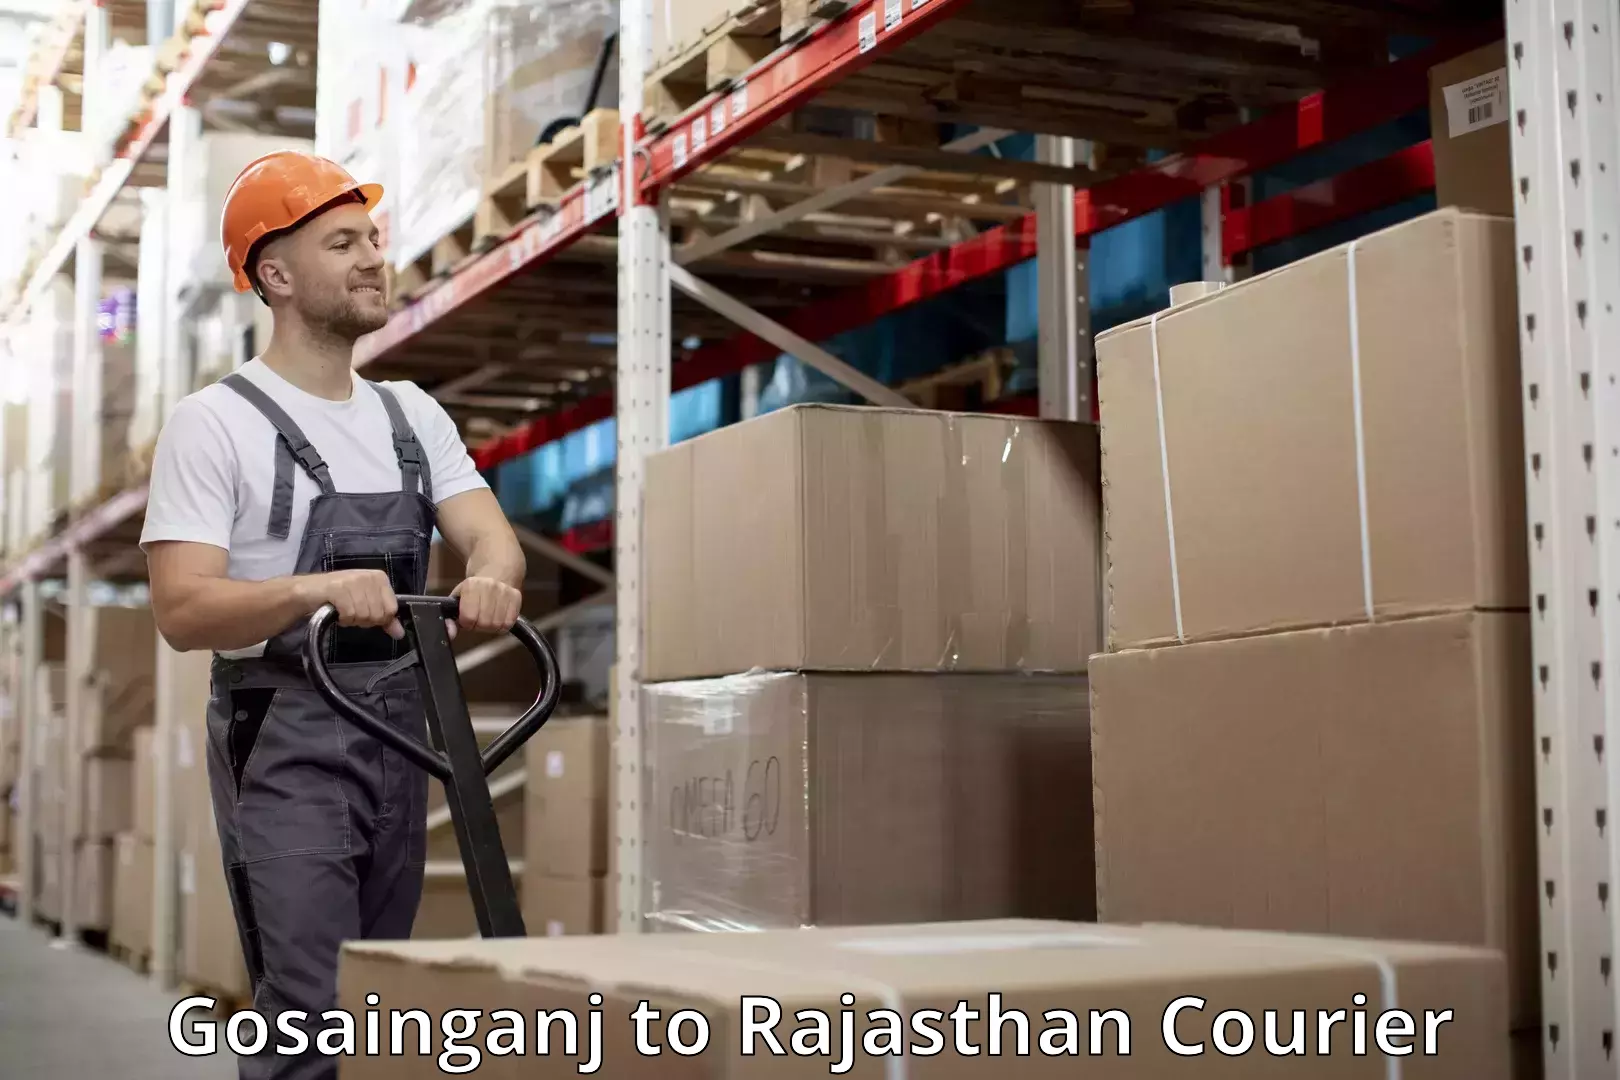 Baggage transport management Gosainganj to Rajasthan